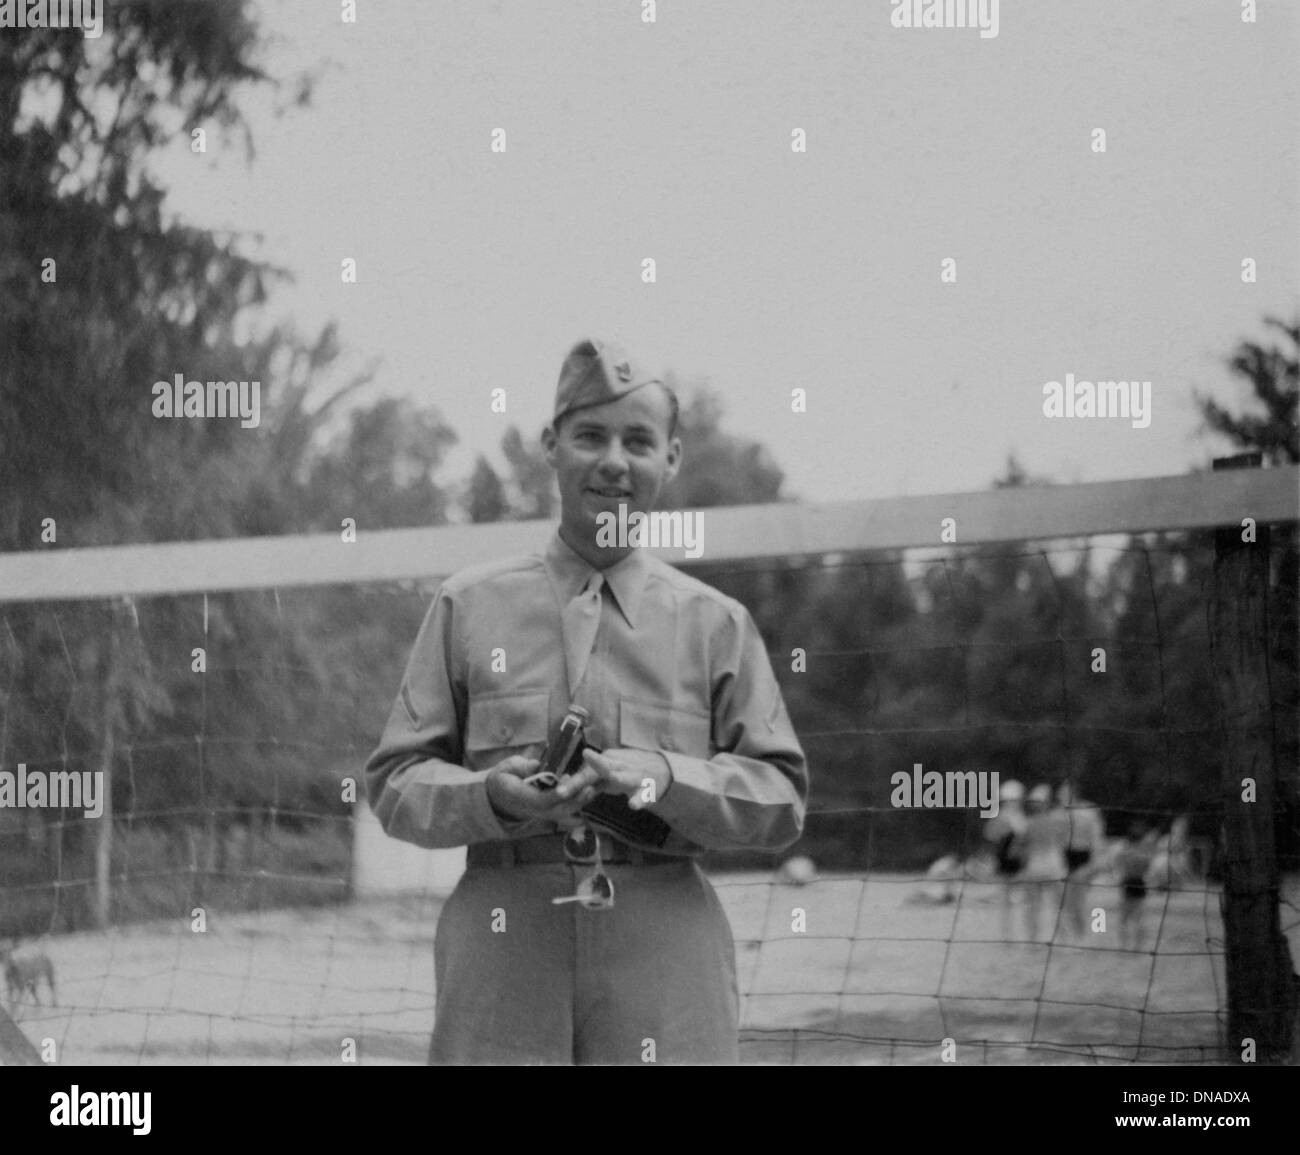 Soldato in uniforme nella parte anteriore della rete da pallavolo, ritratto, durante la seconda guerra mondiale, US Army Base Militare, Indiana, USA, 1942 Foto Stock